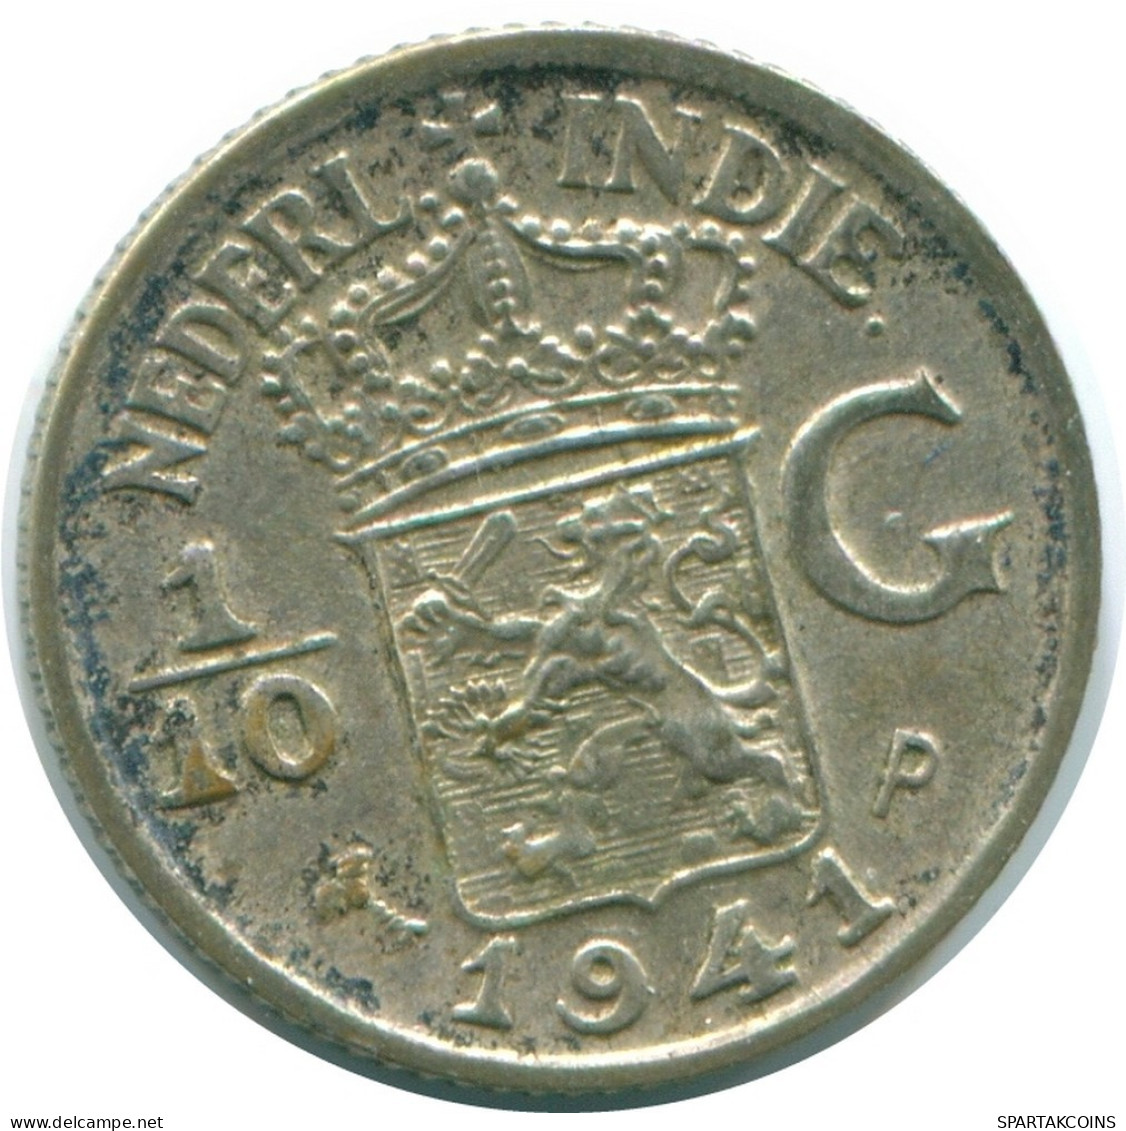 1/10 GULDEN 1941 P NIEDERLANDE OSTINDIEN SILBER Koloniale Münze #NL13708.3.D.A - Nederlands-Indië